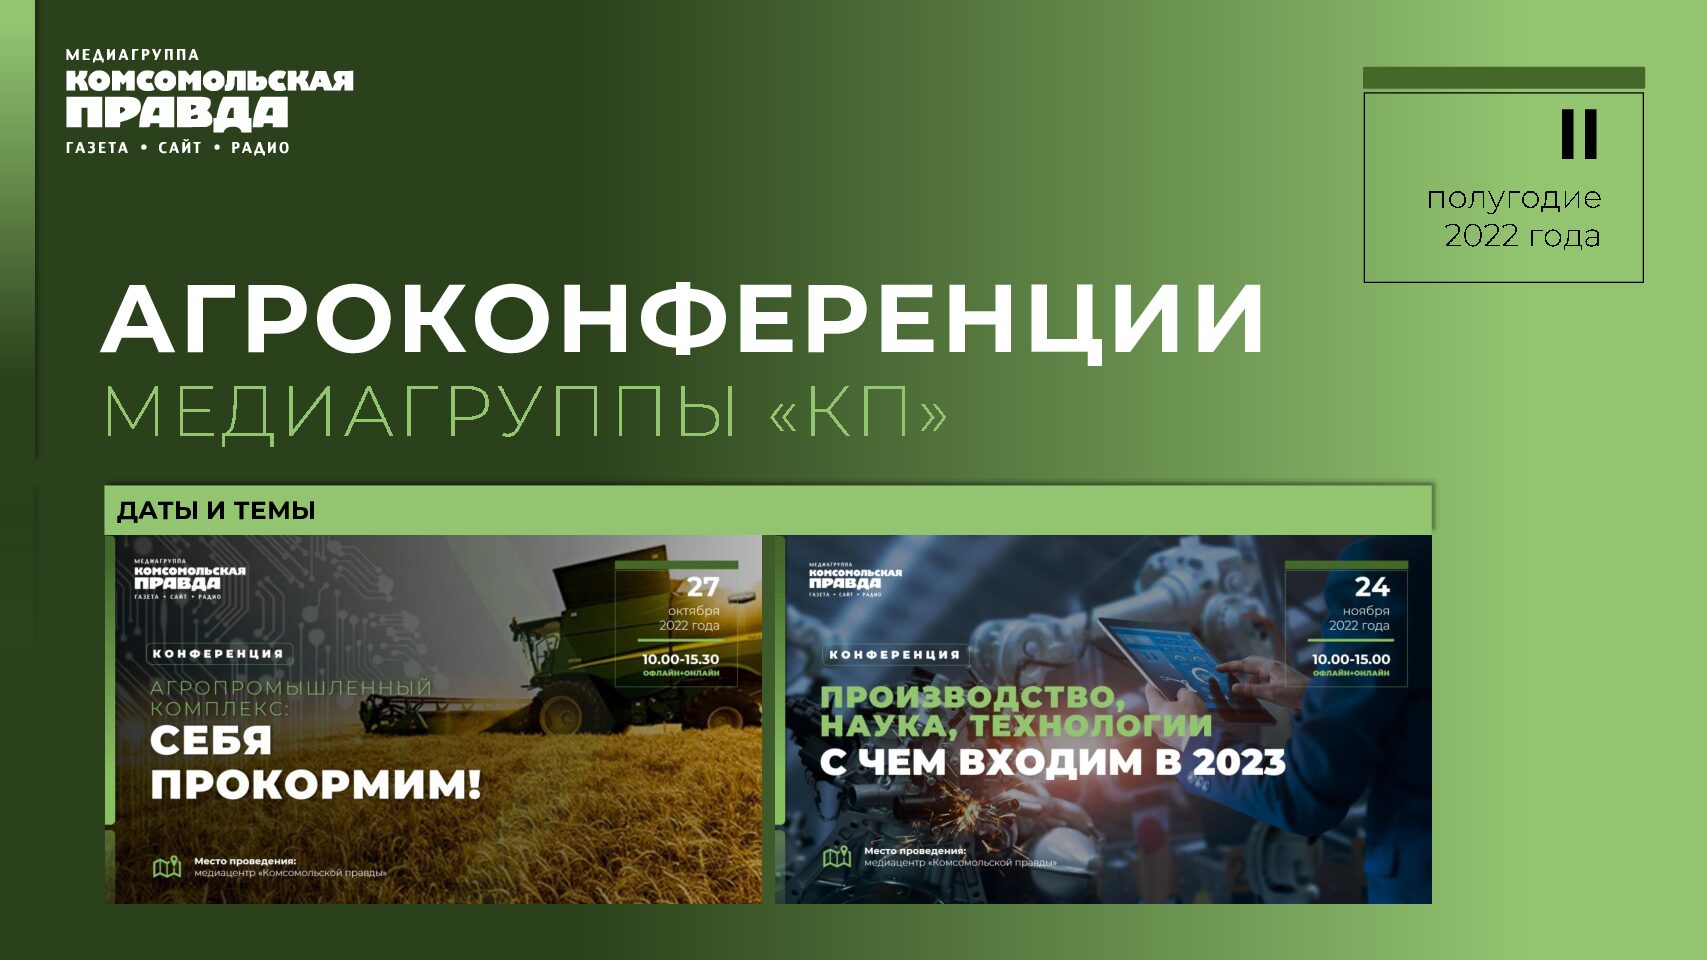 Агроконференции КП в 2 полугодии 2022